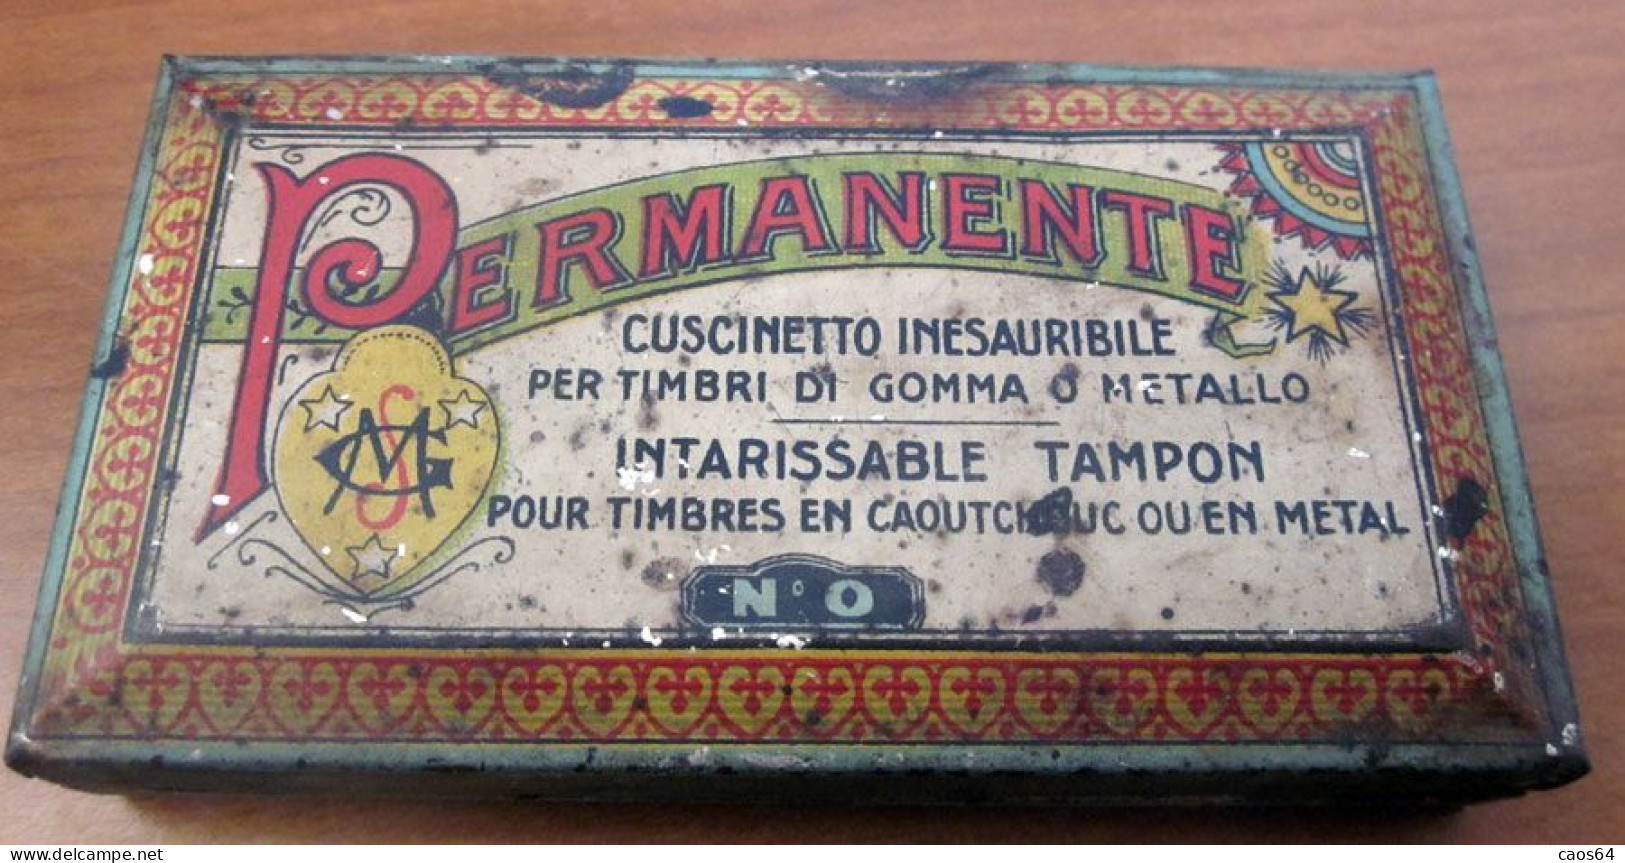 Cuscinetto Per Timbri Permanente Vintage - Seals